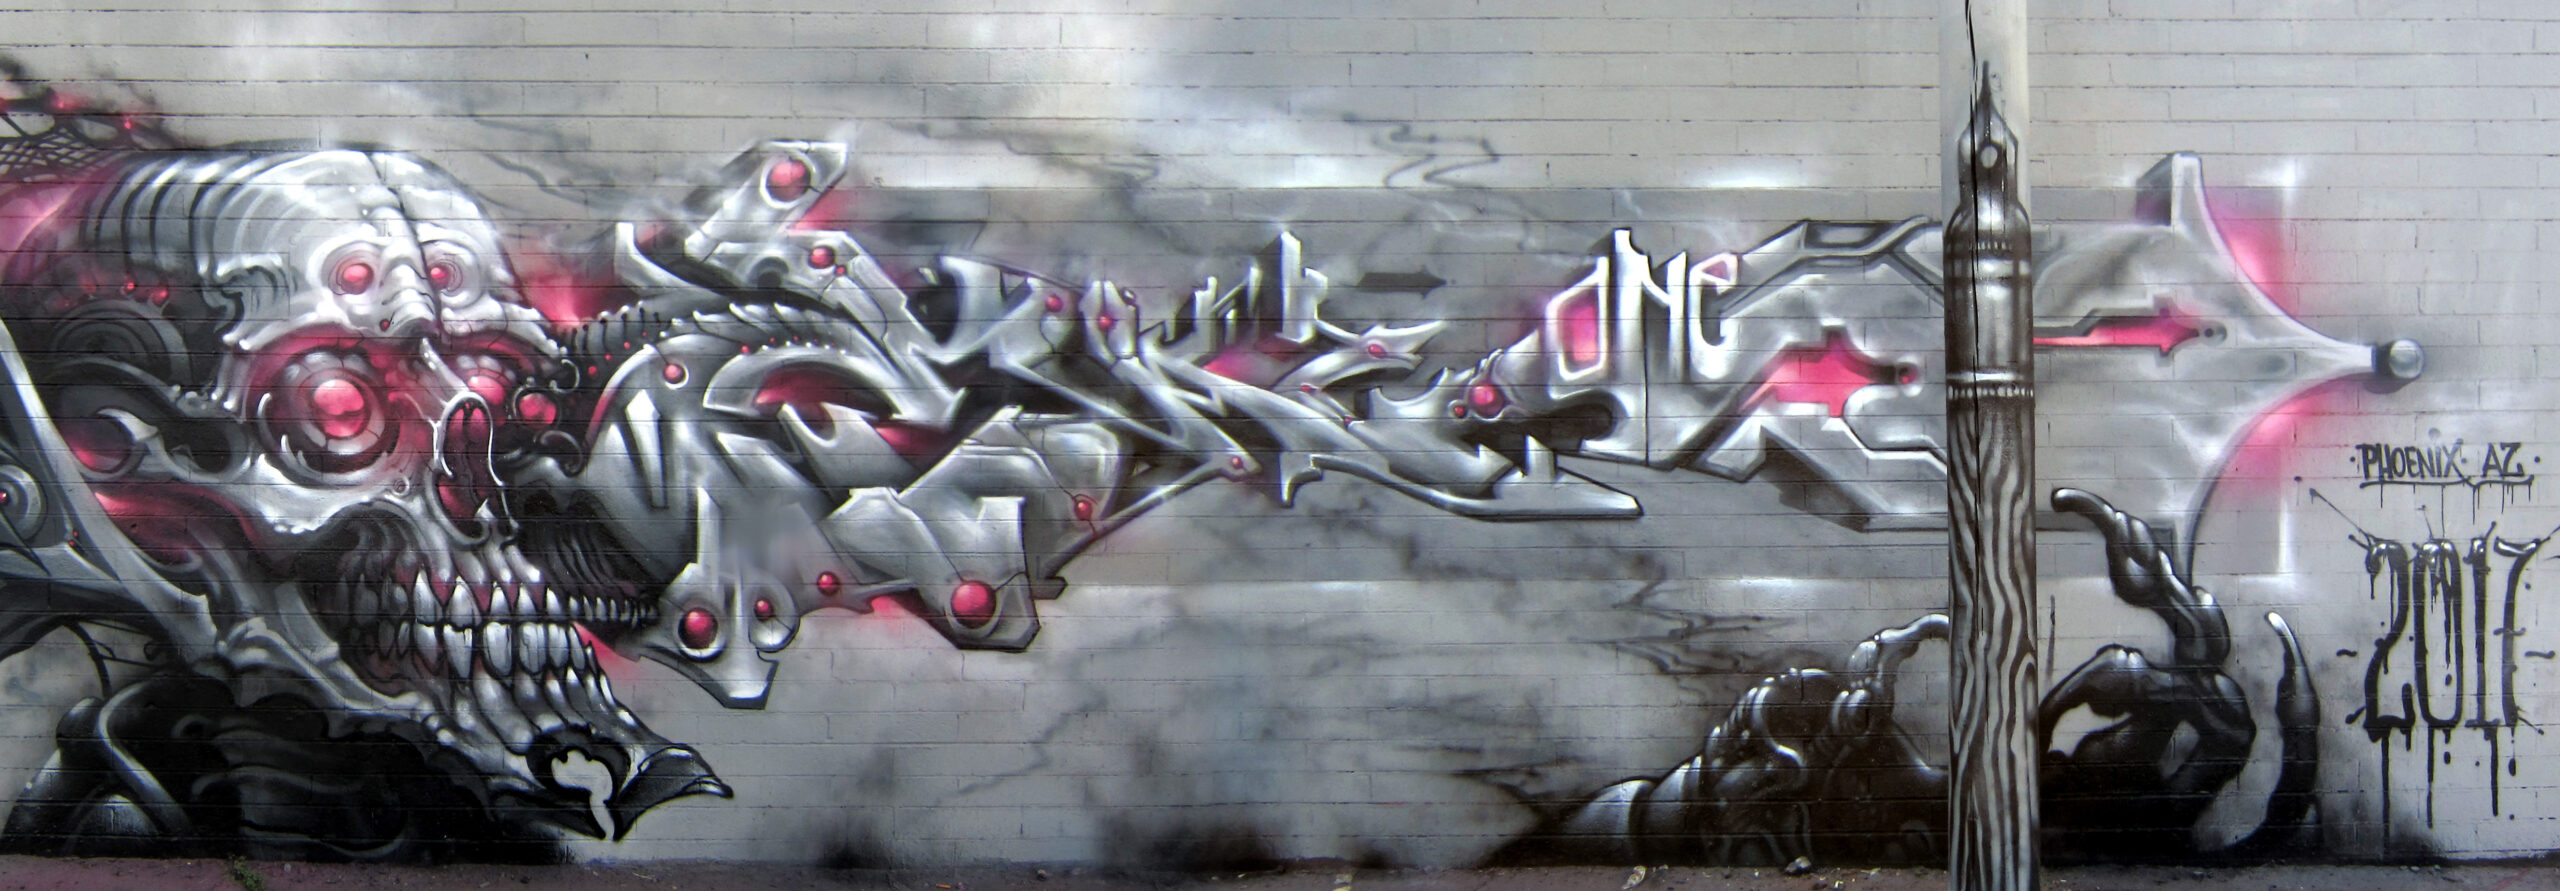 eaz graffiti